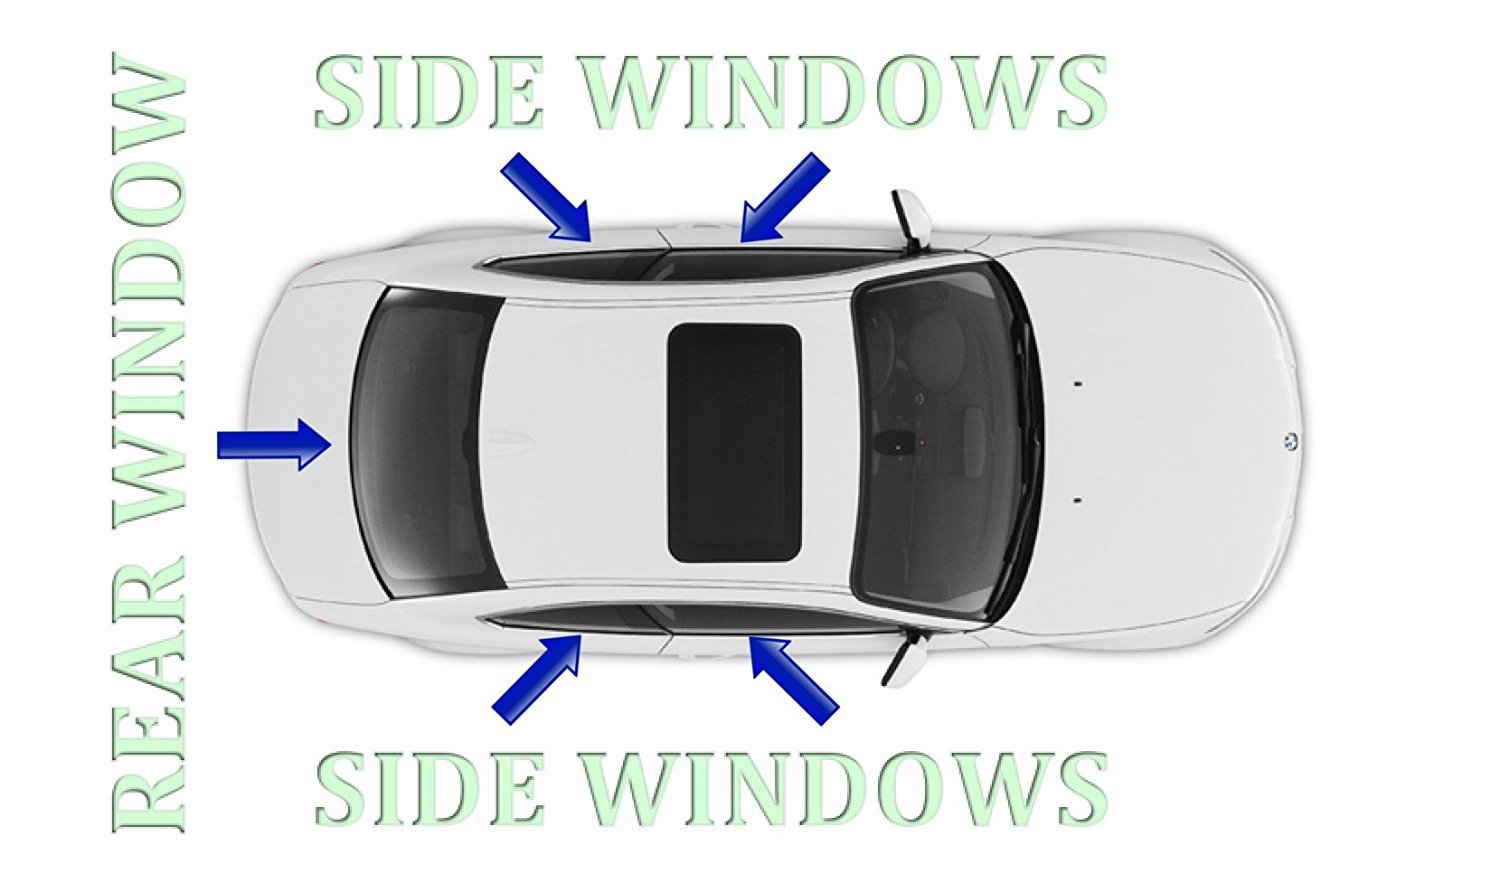 Autotech Park Precut Window Tinting Film for 2015-2020 Volkswagen Golf 4 Door Hatchback